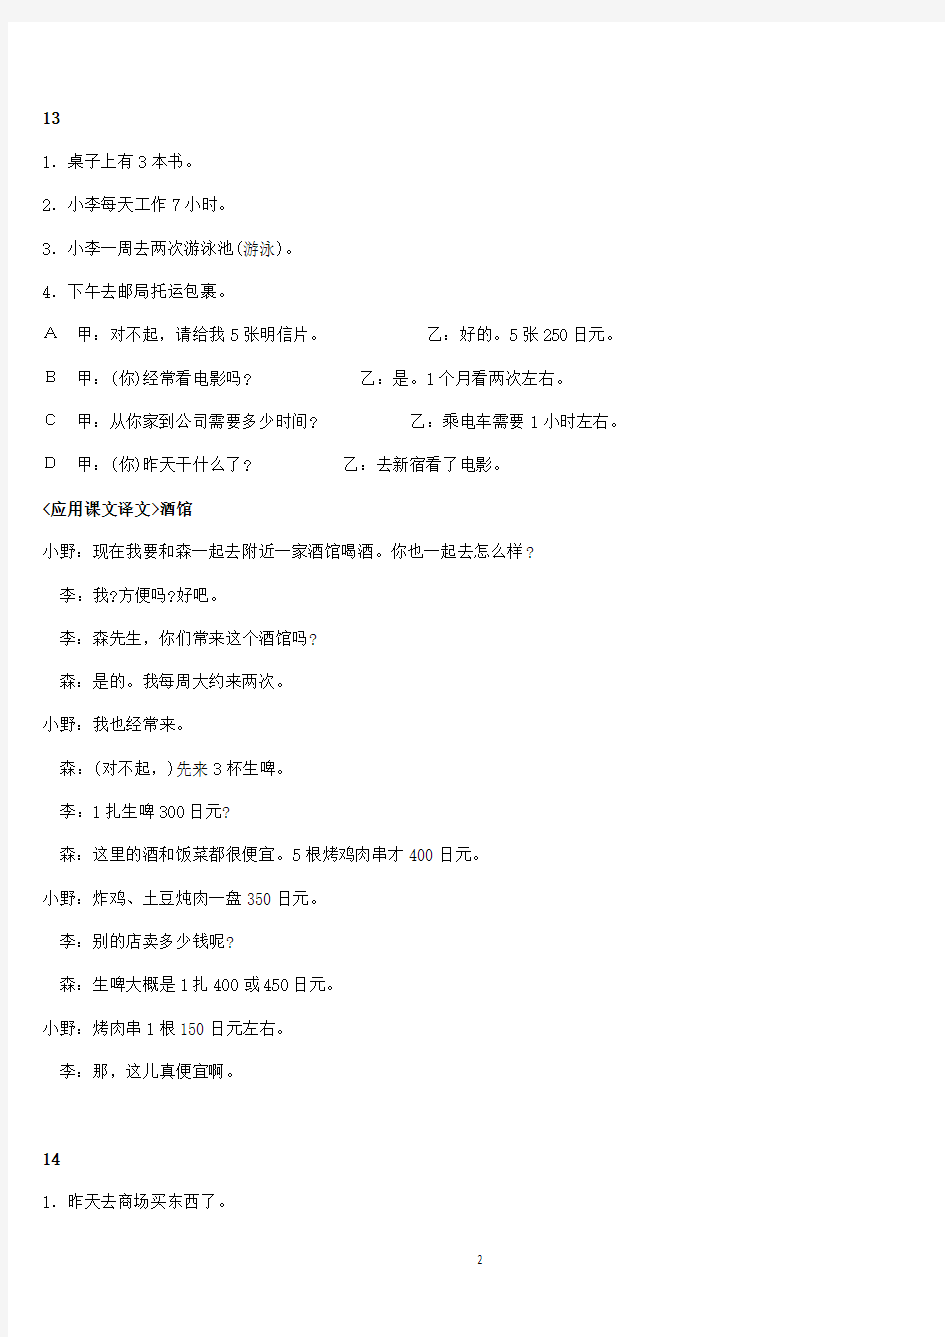 新标准日本语初级课文翻译上册(2020年整理).pdf